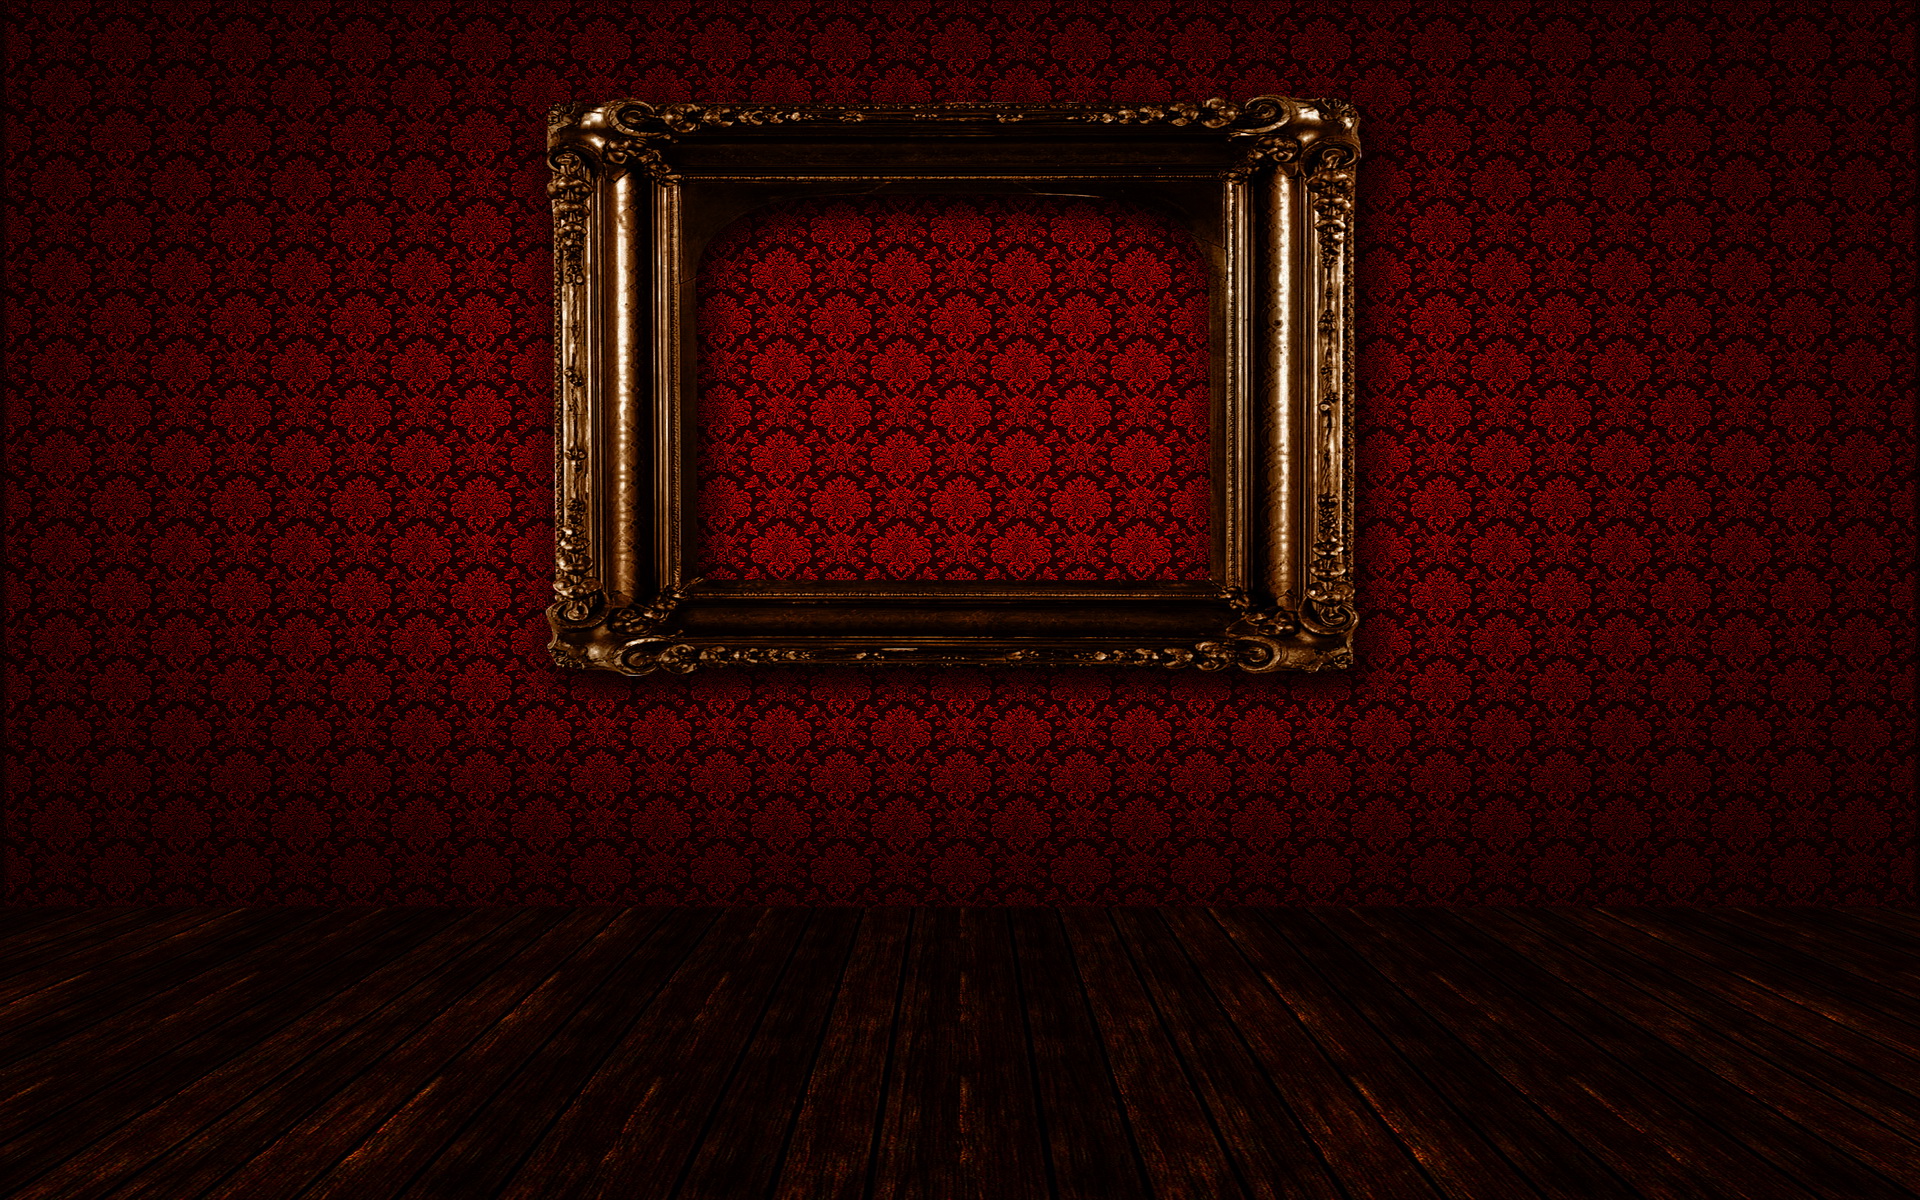 marco de papel tapiz,rojo,madera,oscuridad,suelo,habitación